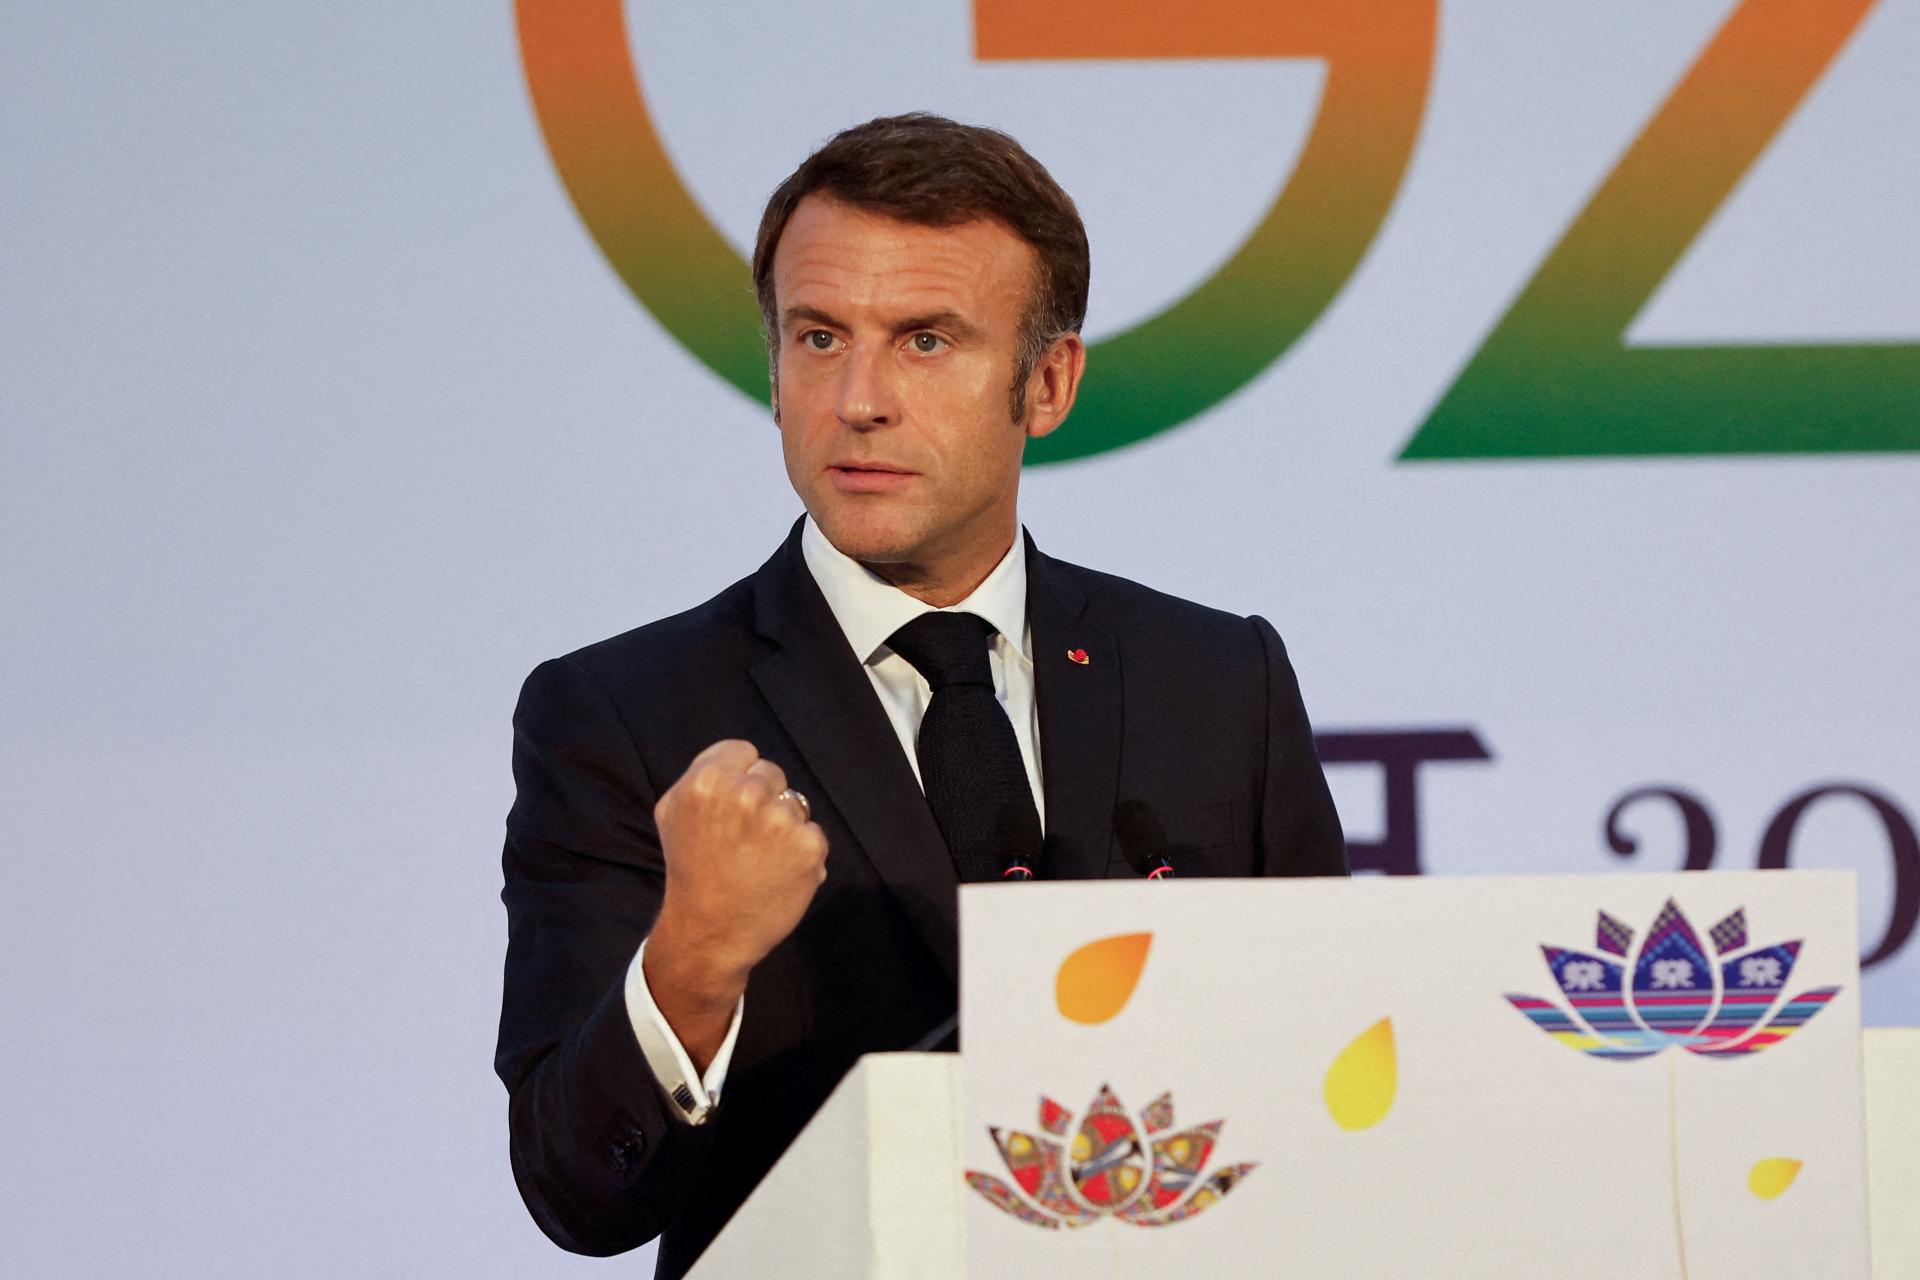 Les troupes françaises quitteront le Niger, l’ambassadeur rentrera chez lui, a déclaré Macron